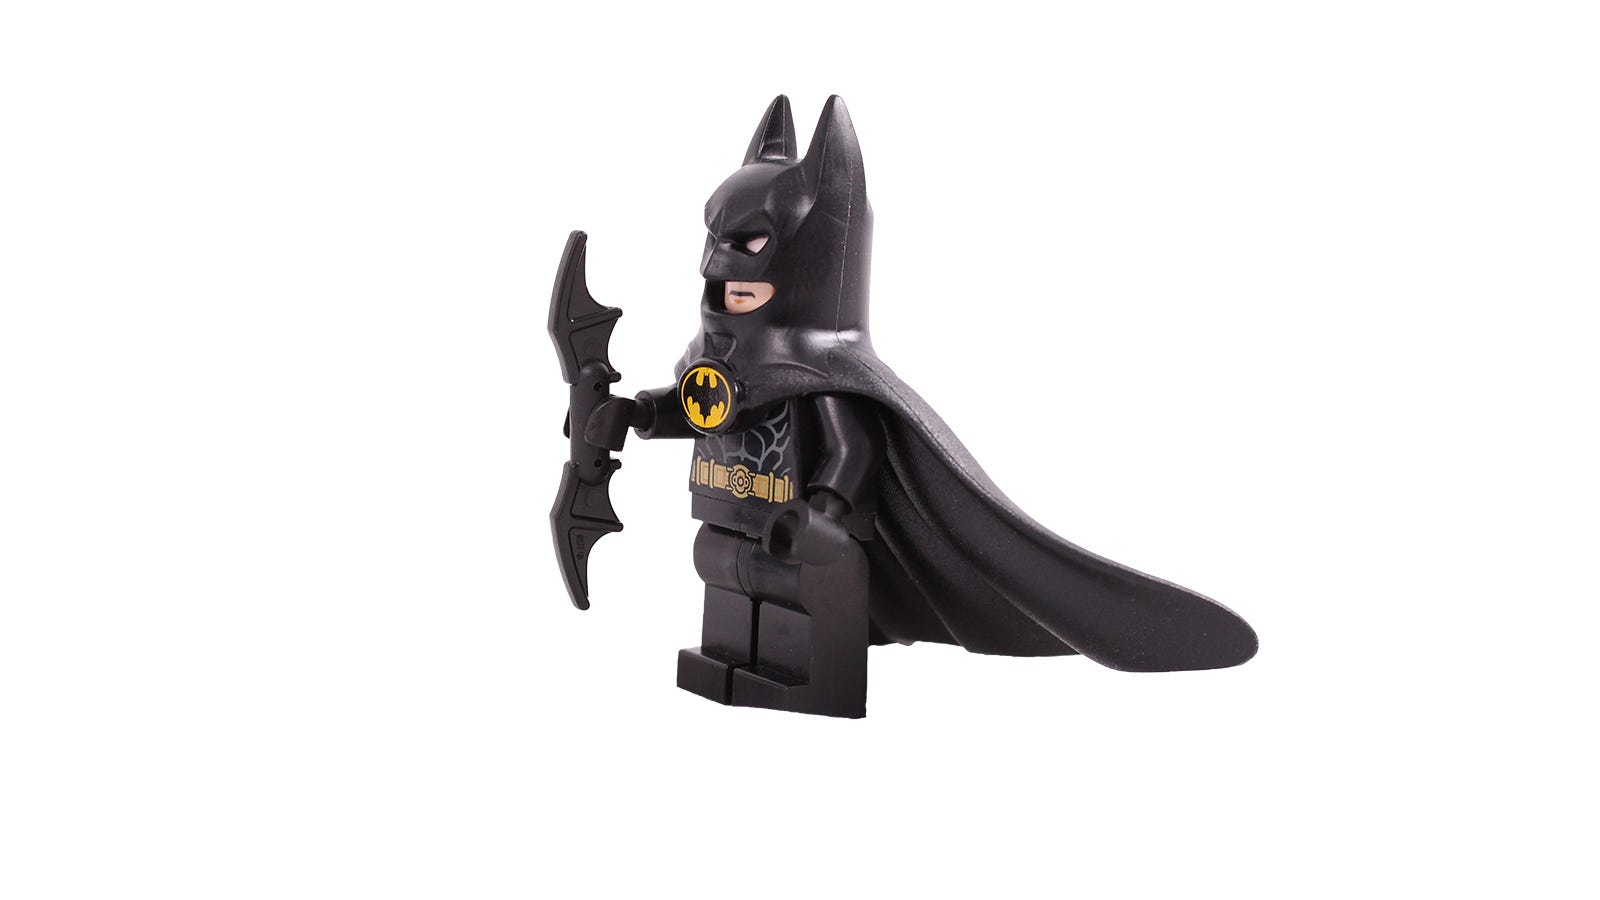 Cận cảnh LEGO Batman minifigure.